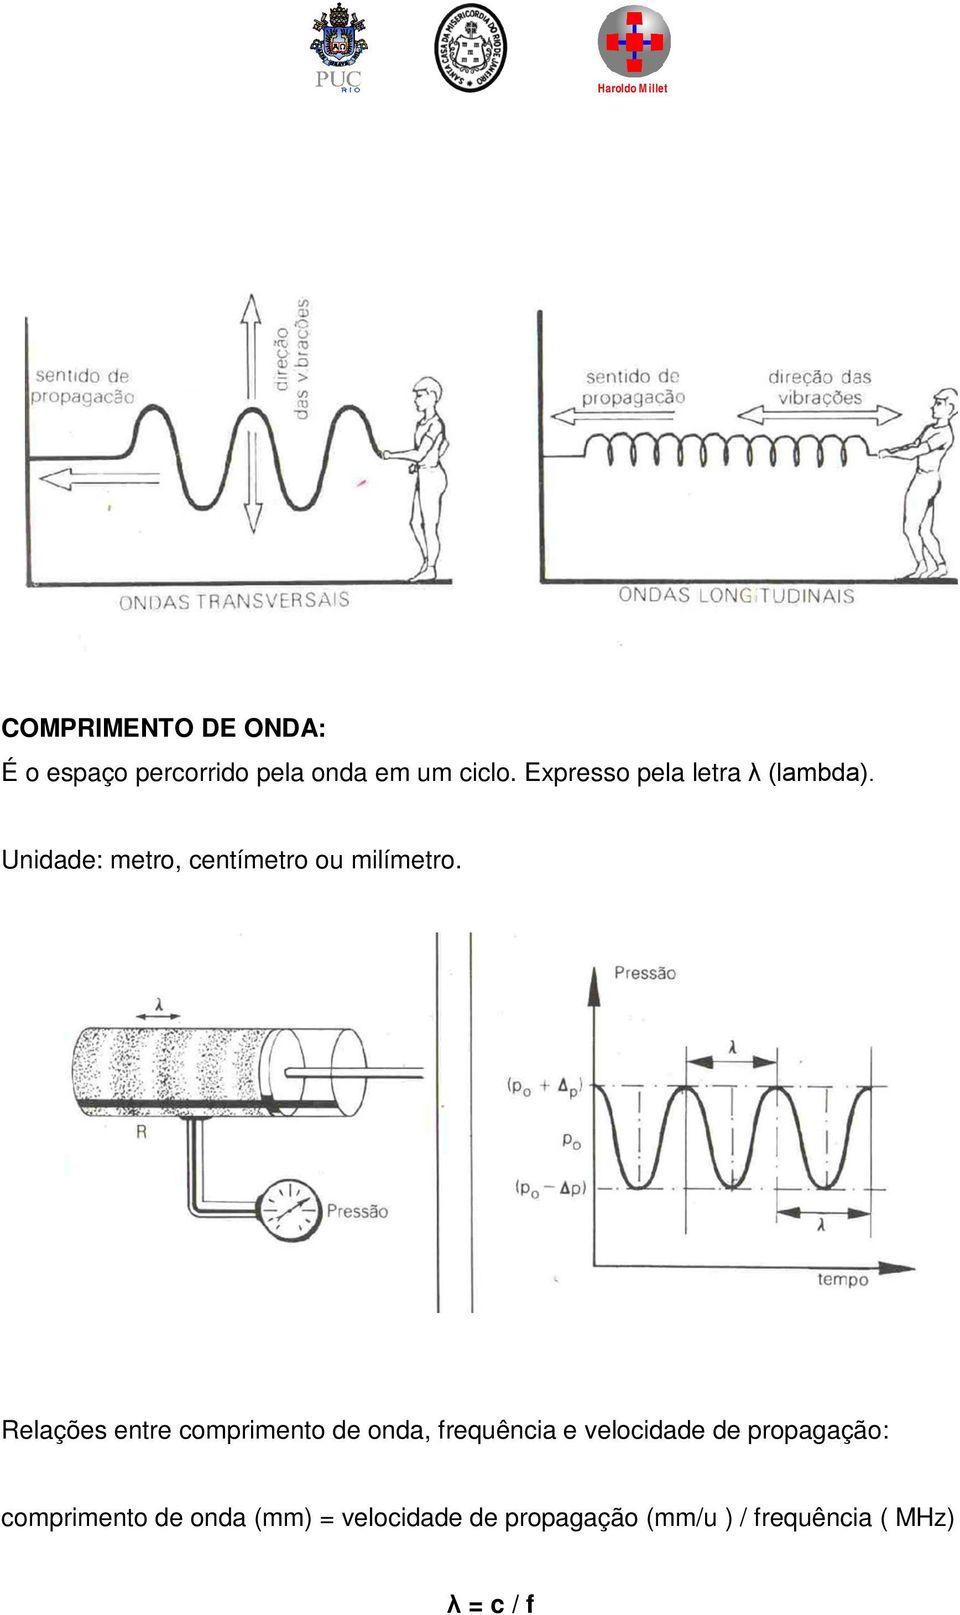 Relações entre comprimento de onda, frequência e velocidade de propagação: